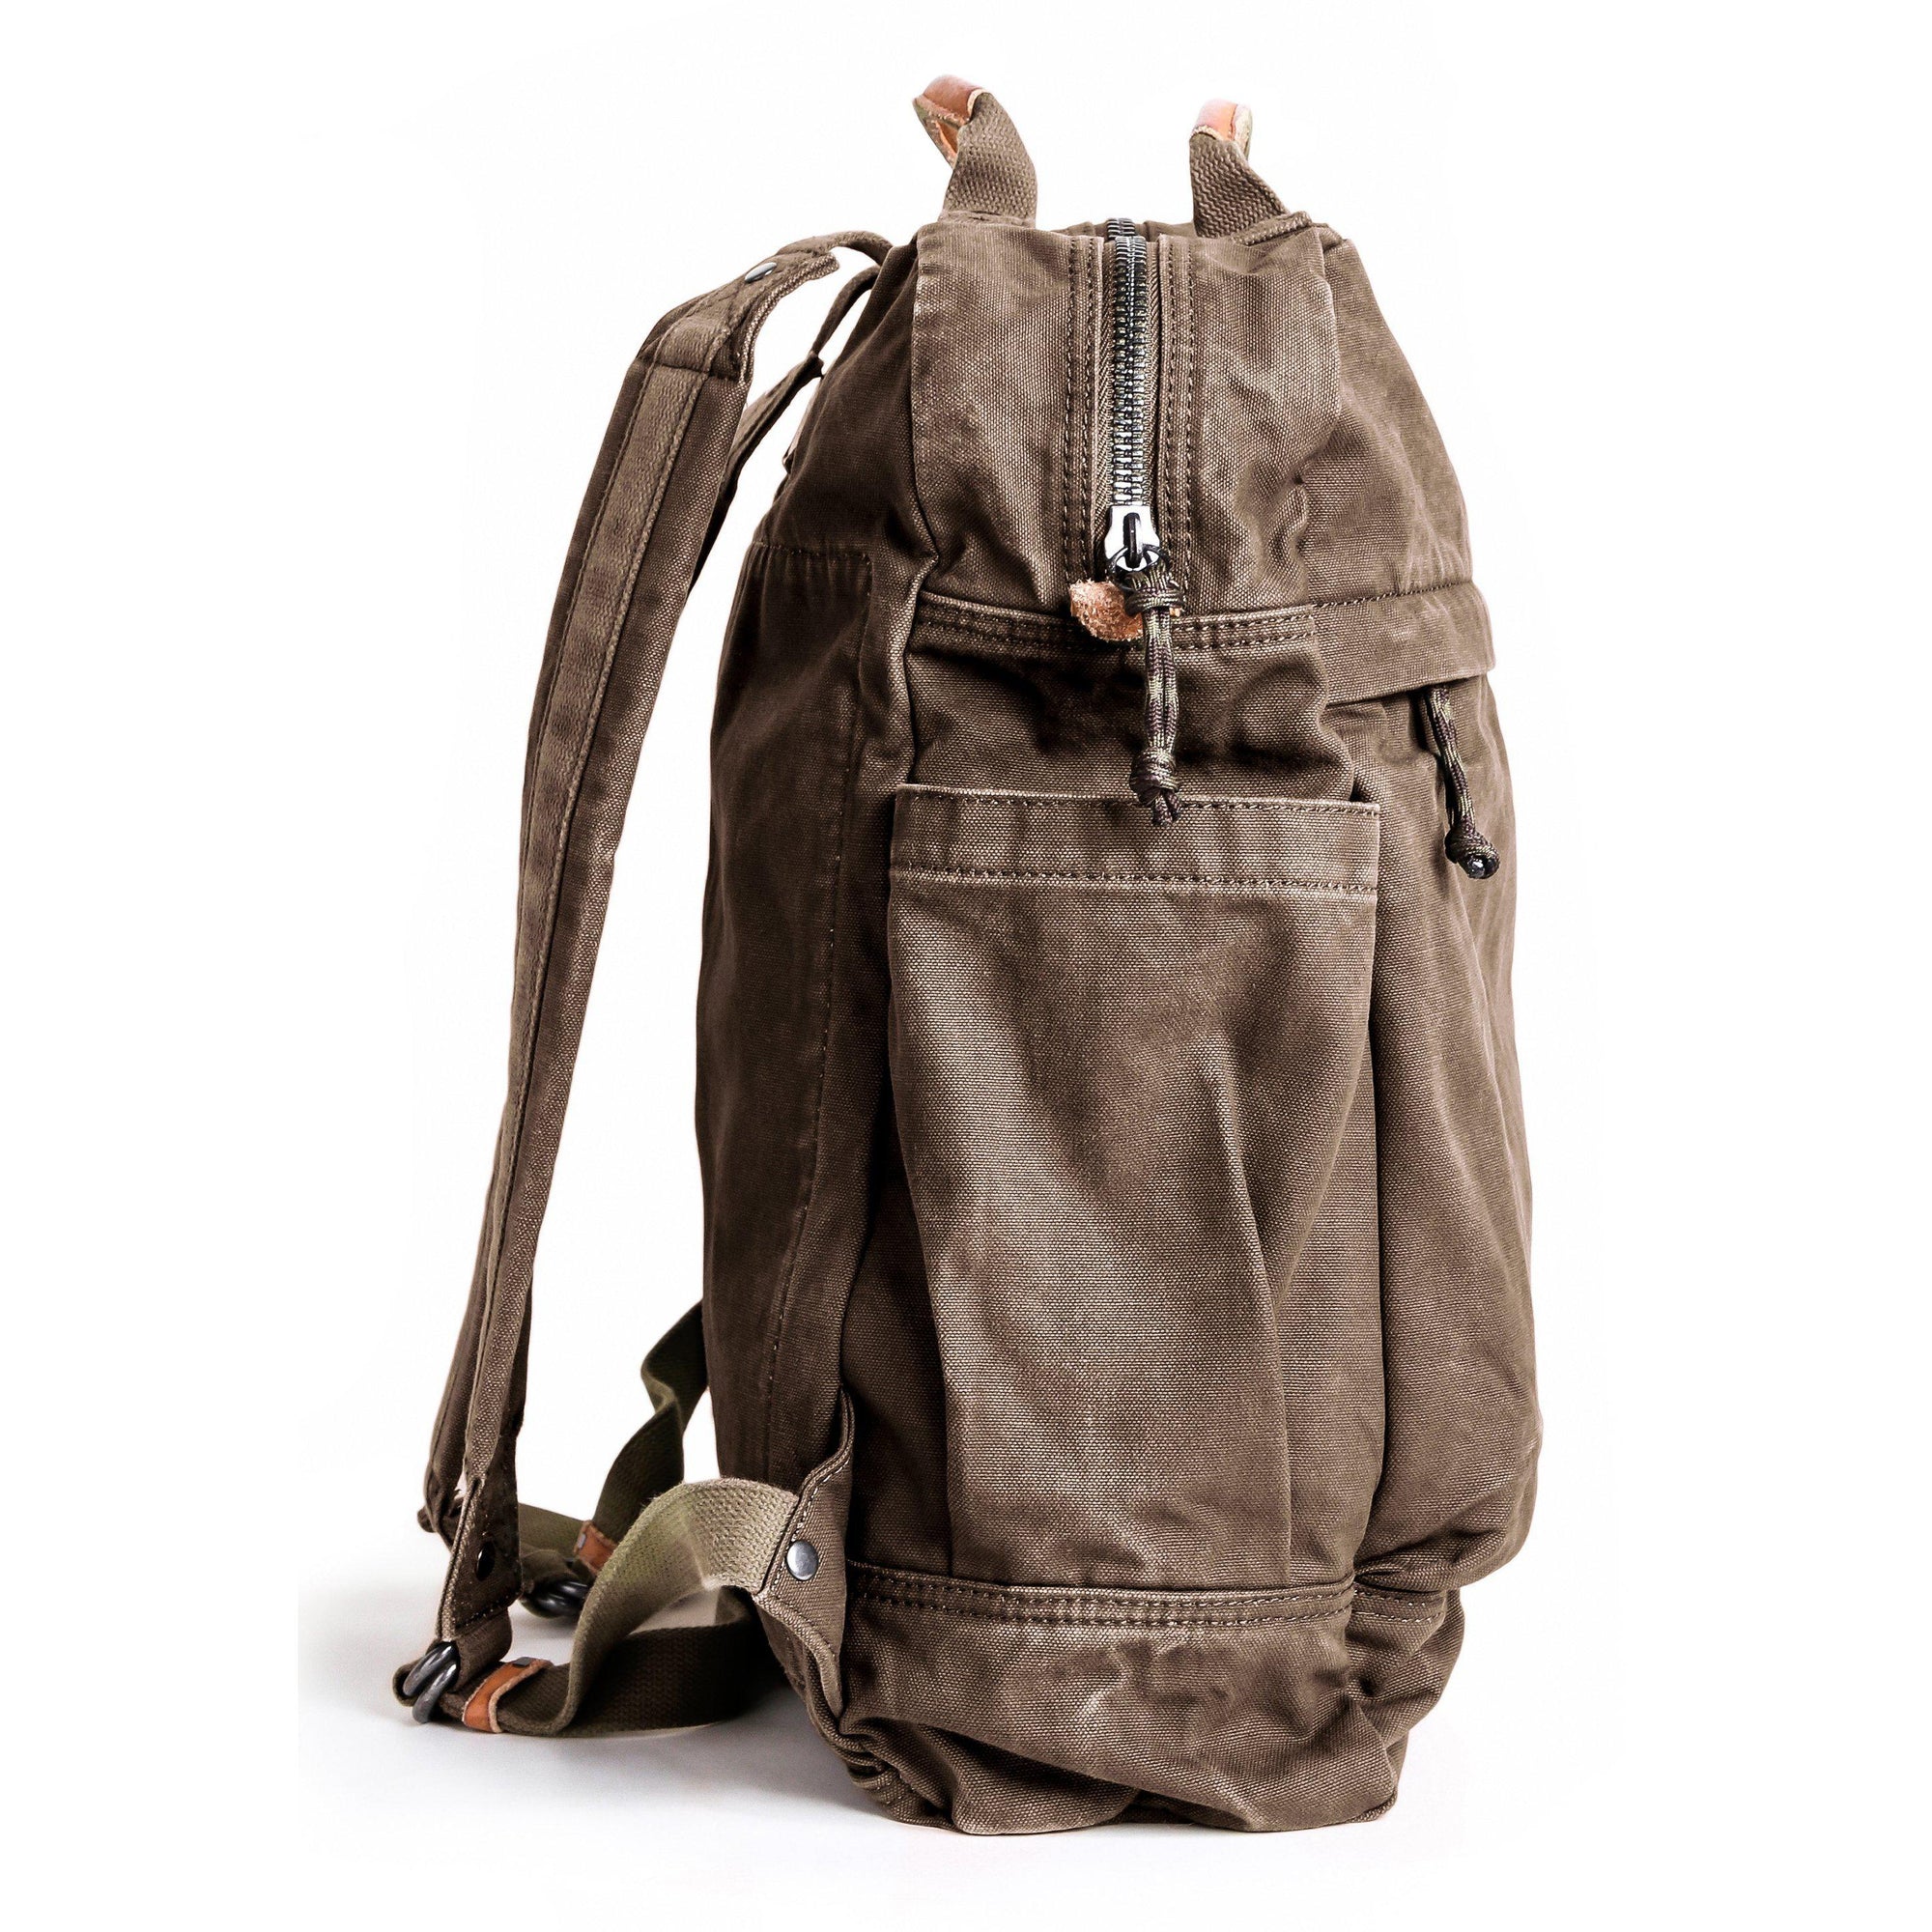 Gootium Canvas Zippered Backpack #G2001